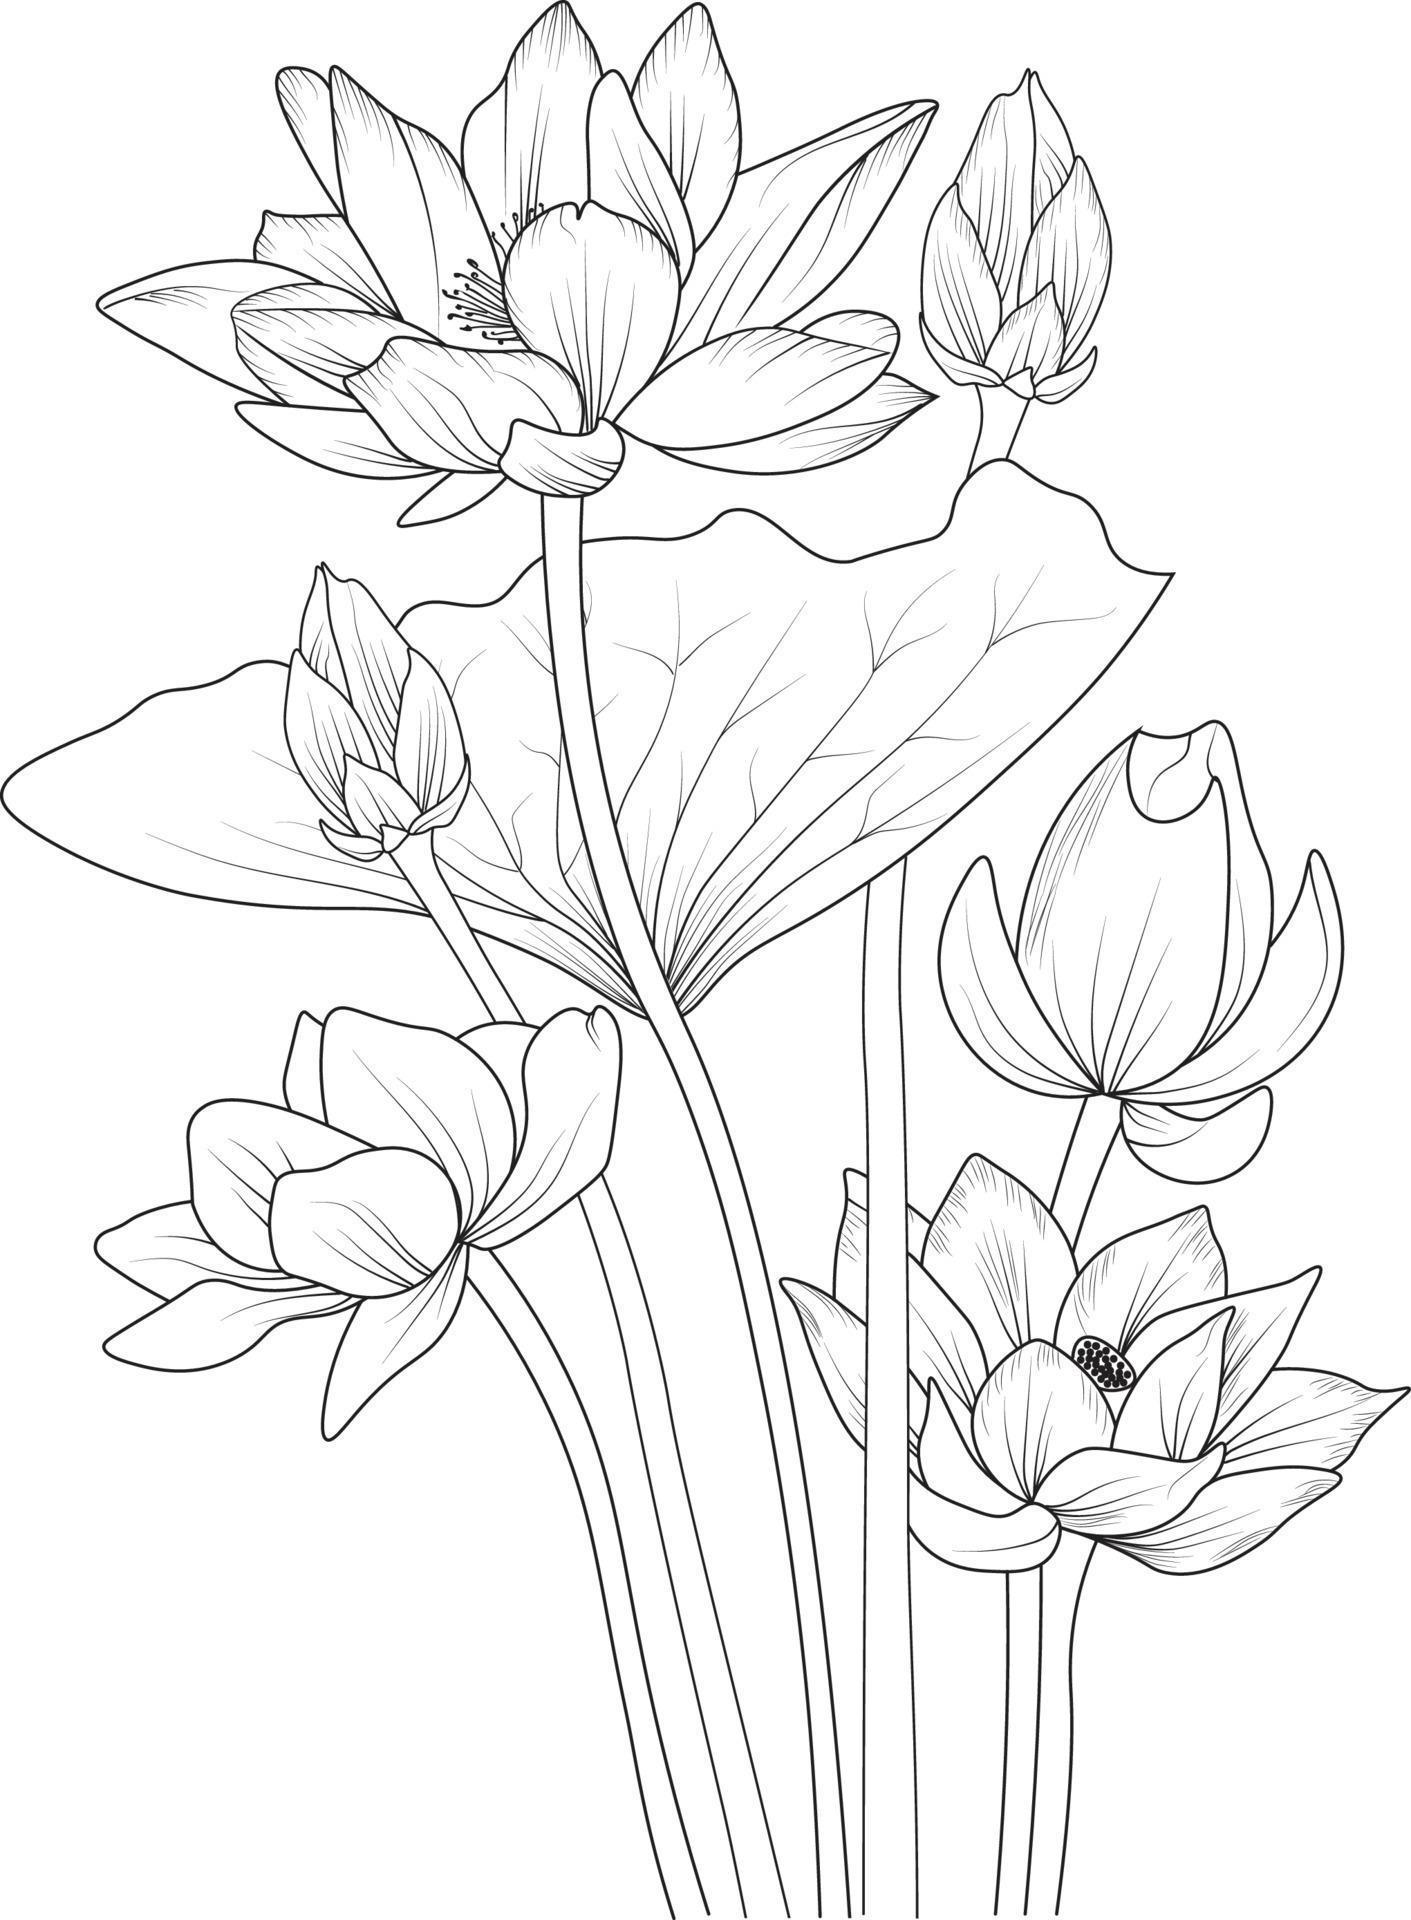 Lotus flower sketch art, vintage style printed for cute flower coloring ...